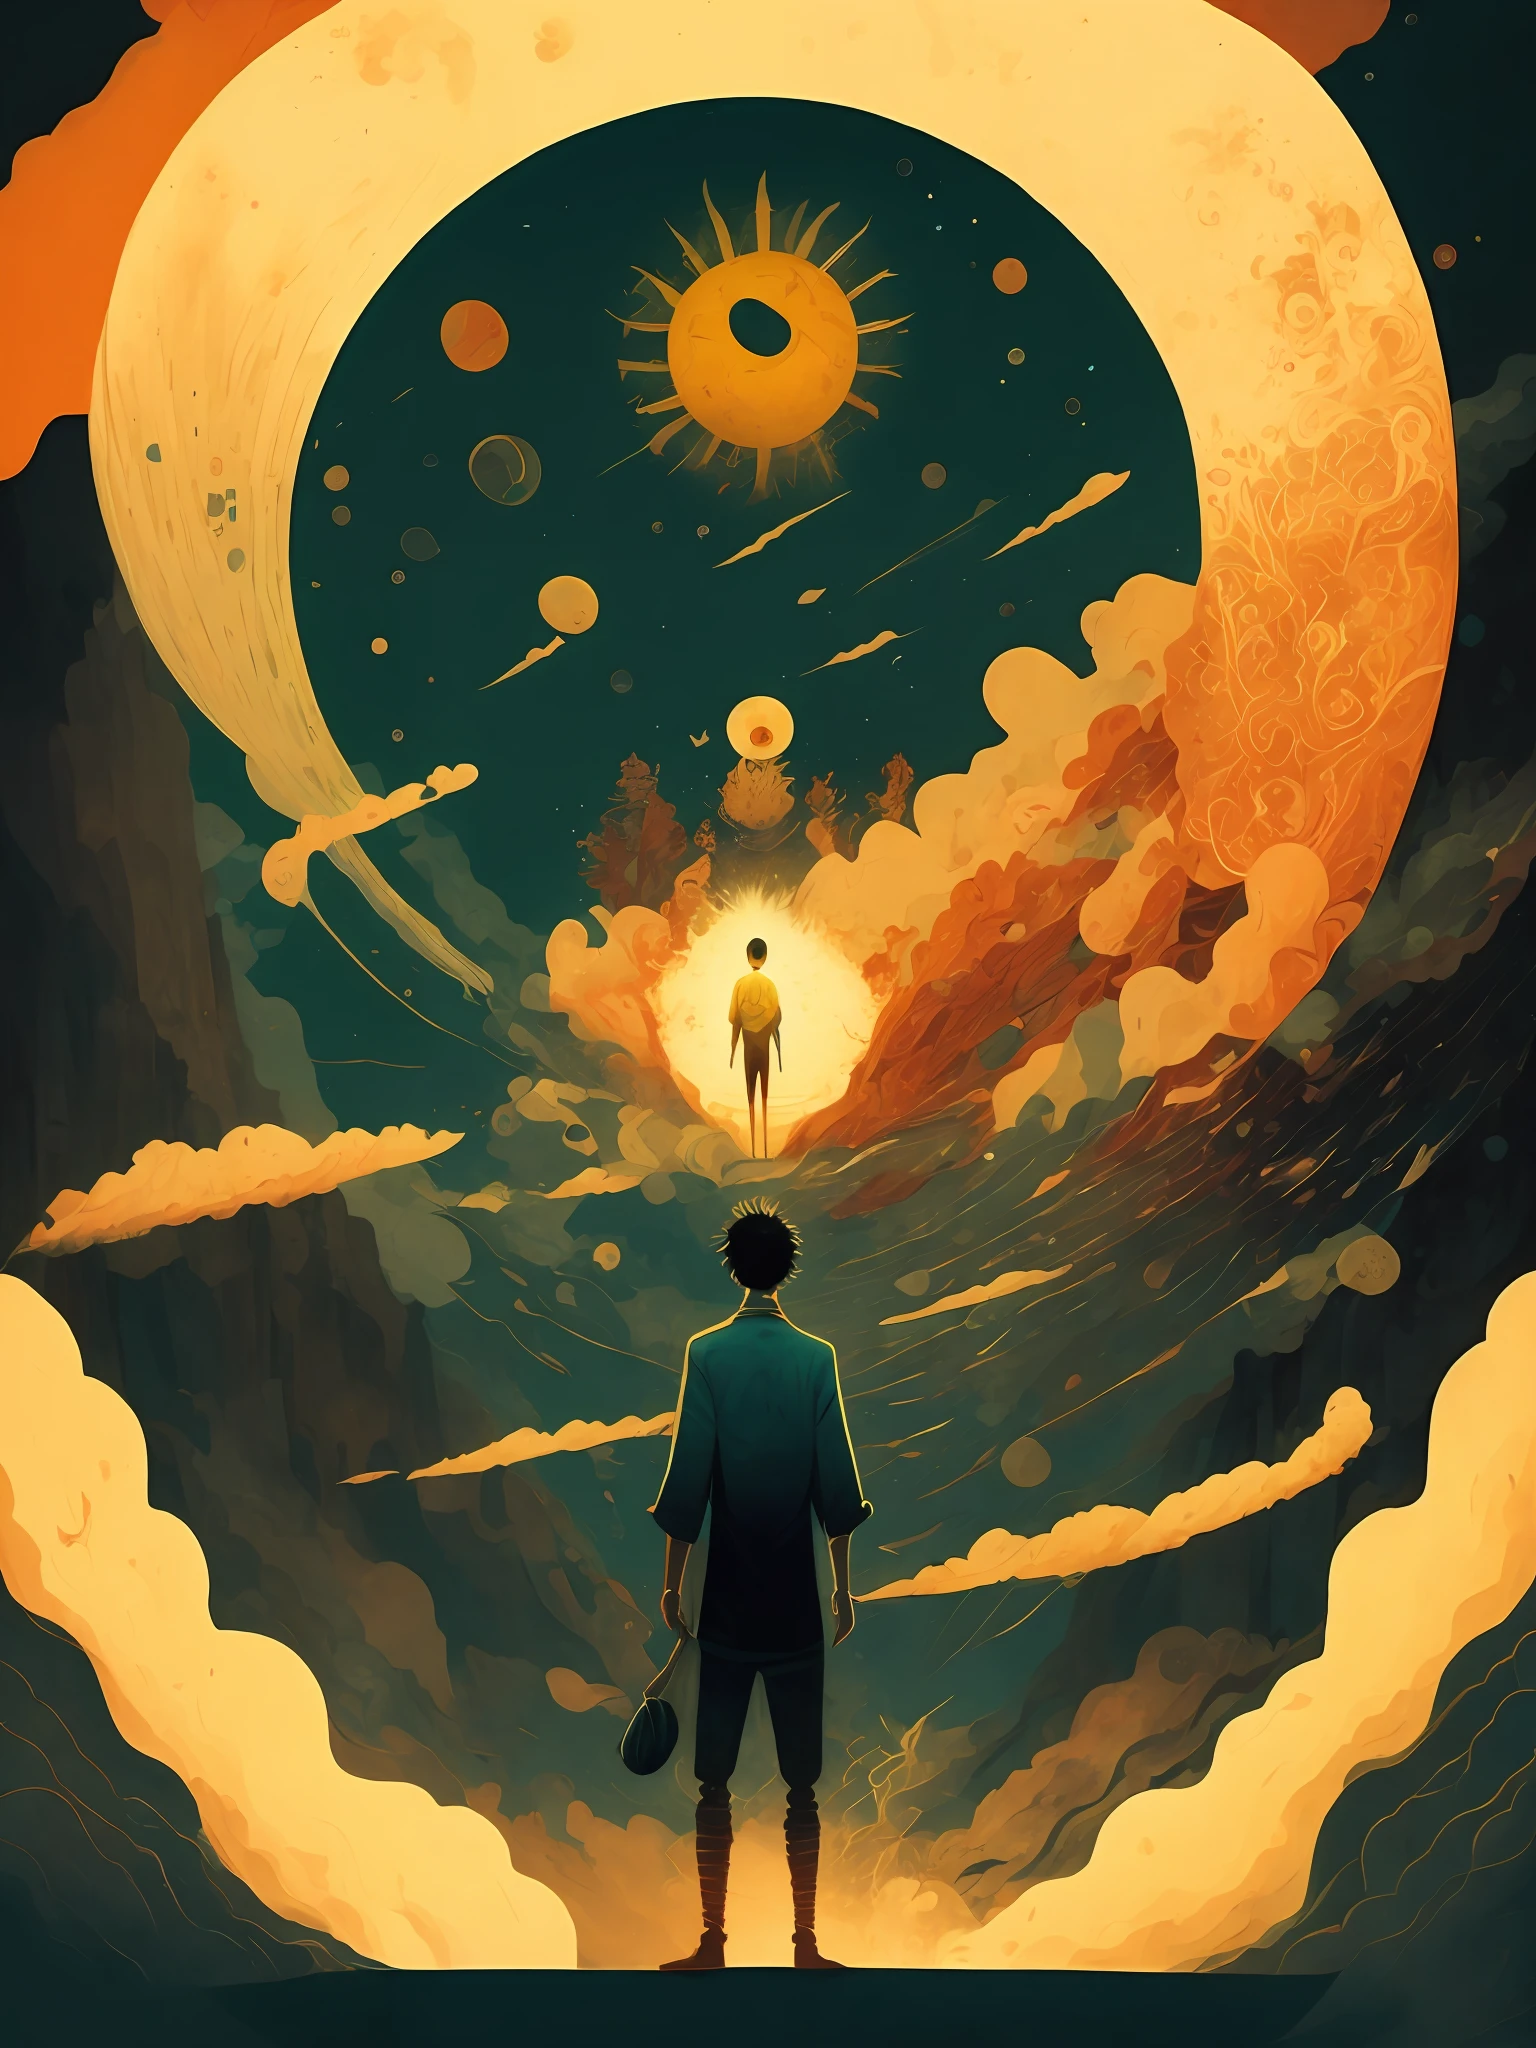 ภาพวาดชายคนหนึ่งยืนอยู่หน้าดวงอาทิตย์ยักษ์โดยมีควันออกมา โดยวิกโต งาย